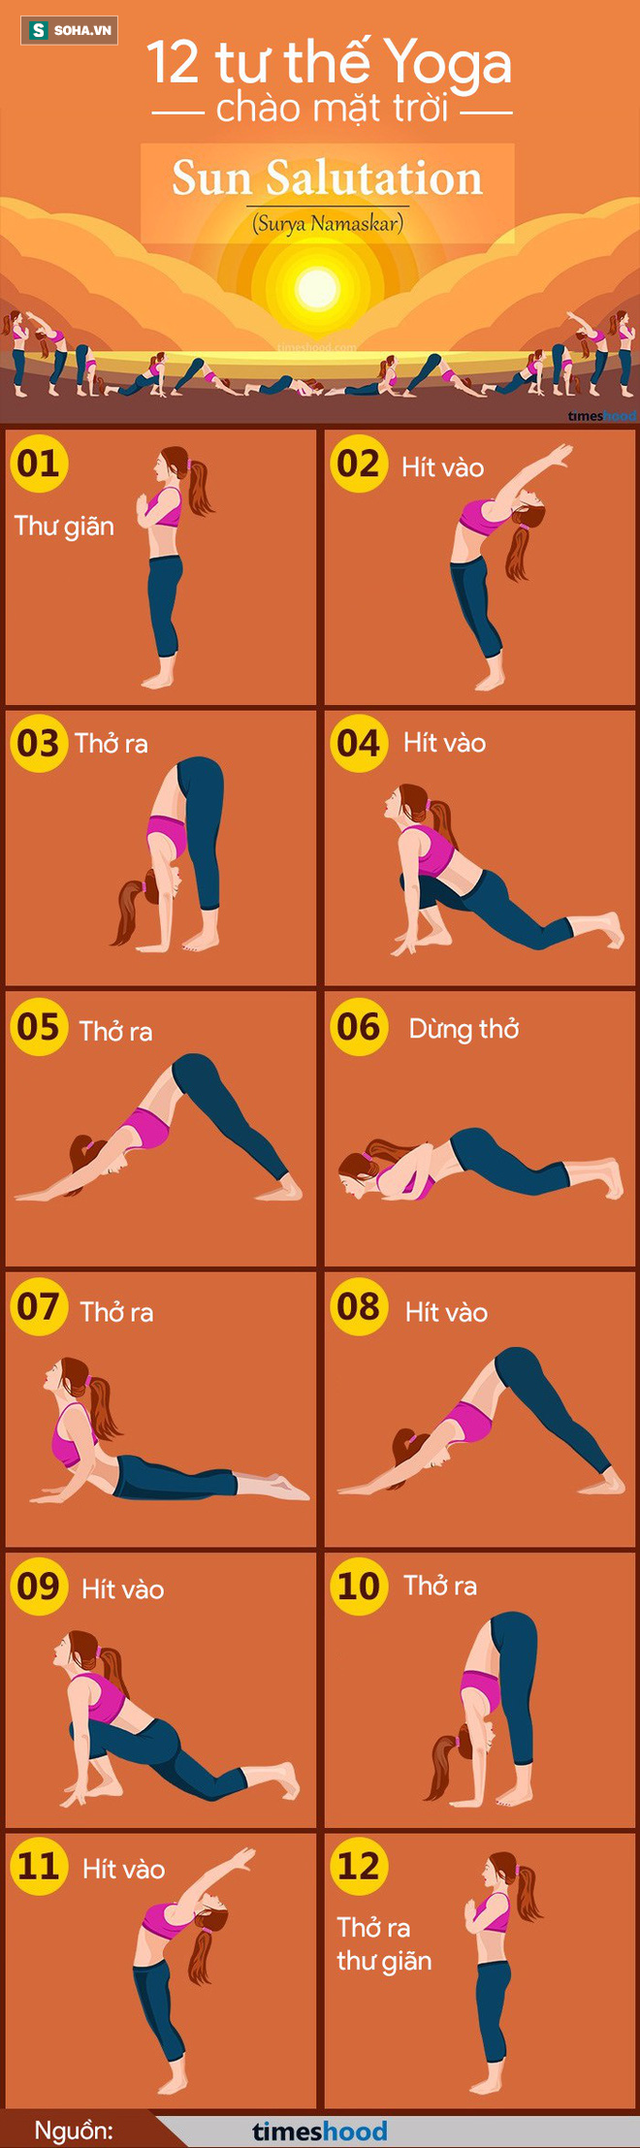 Chào mặt trời: Chuỗi 12 động tác yoga mang lại ít nhất 8 lợi ích tuyệt vời cho sức khỏe - Ảnh 1.